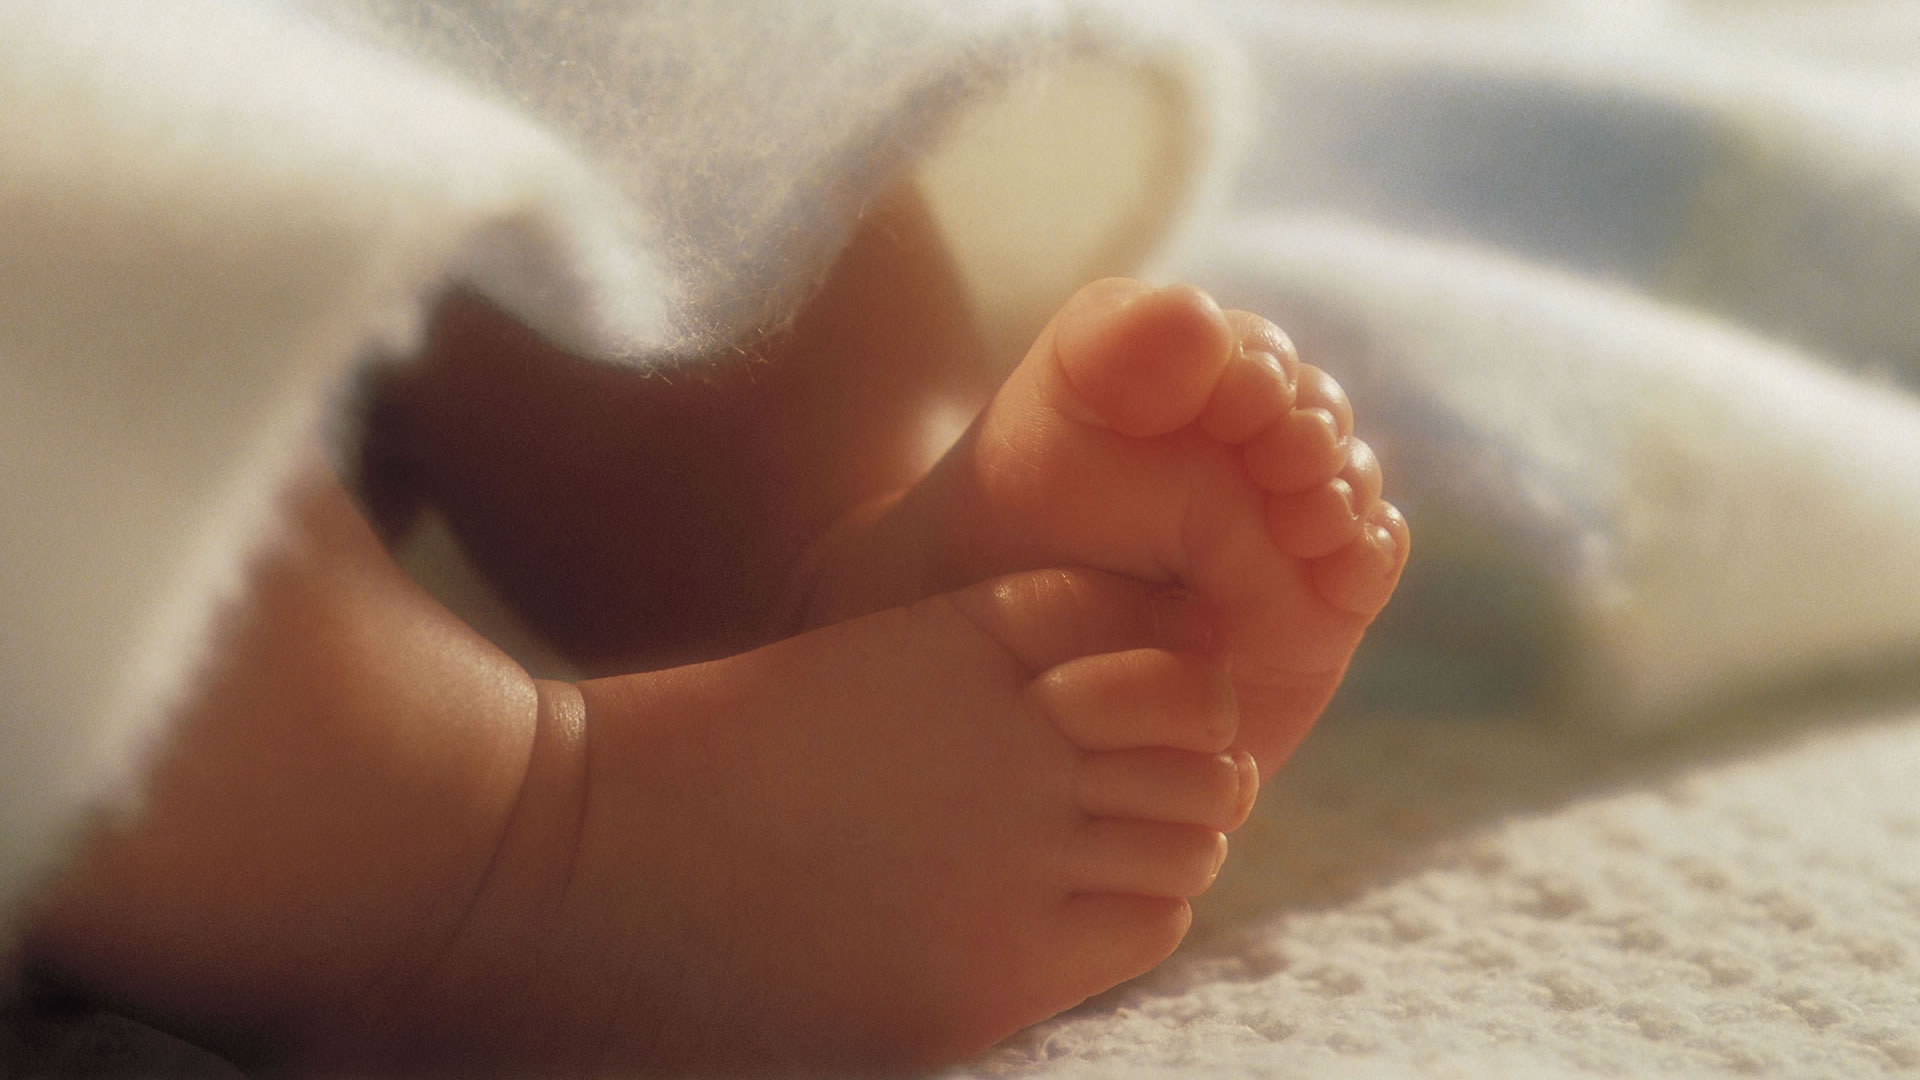 Έρευνα σοκ – Περισσότερα από 7.000 μωρά γεννιούνται νεκρά κάθε μέρα